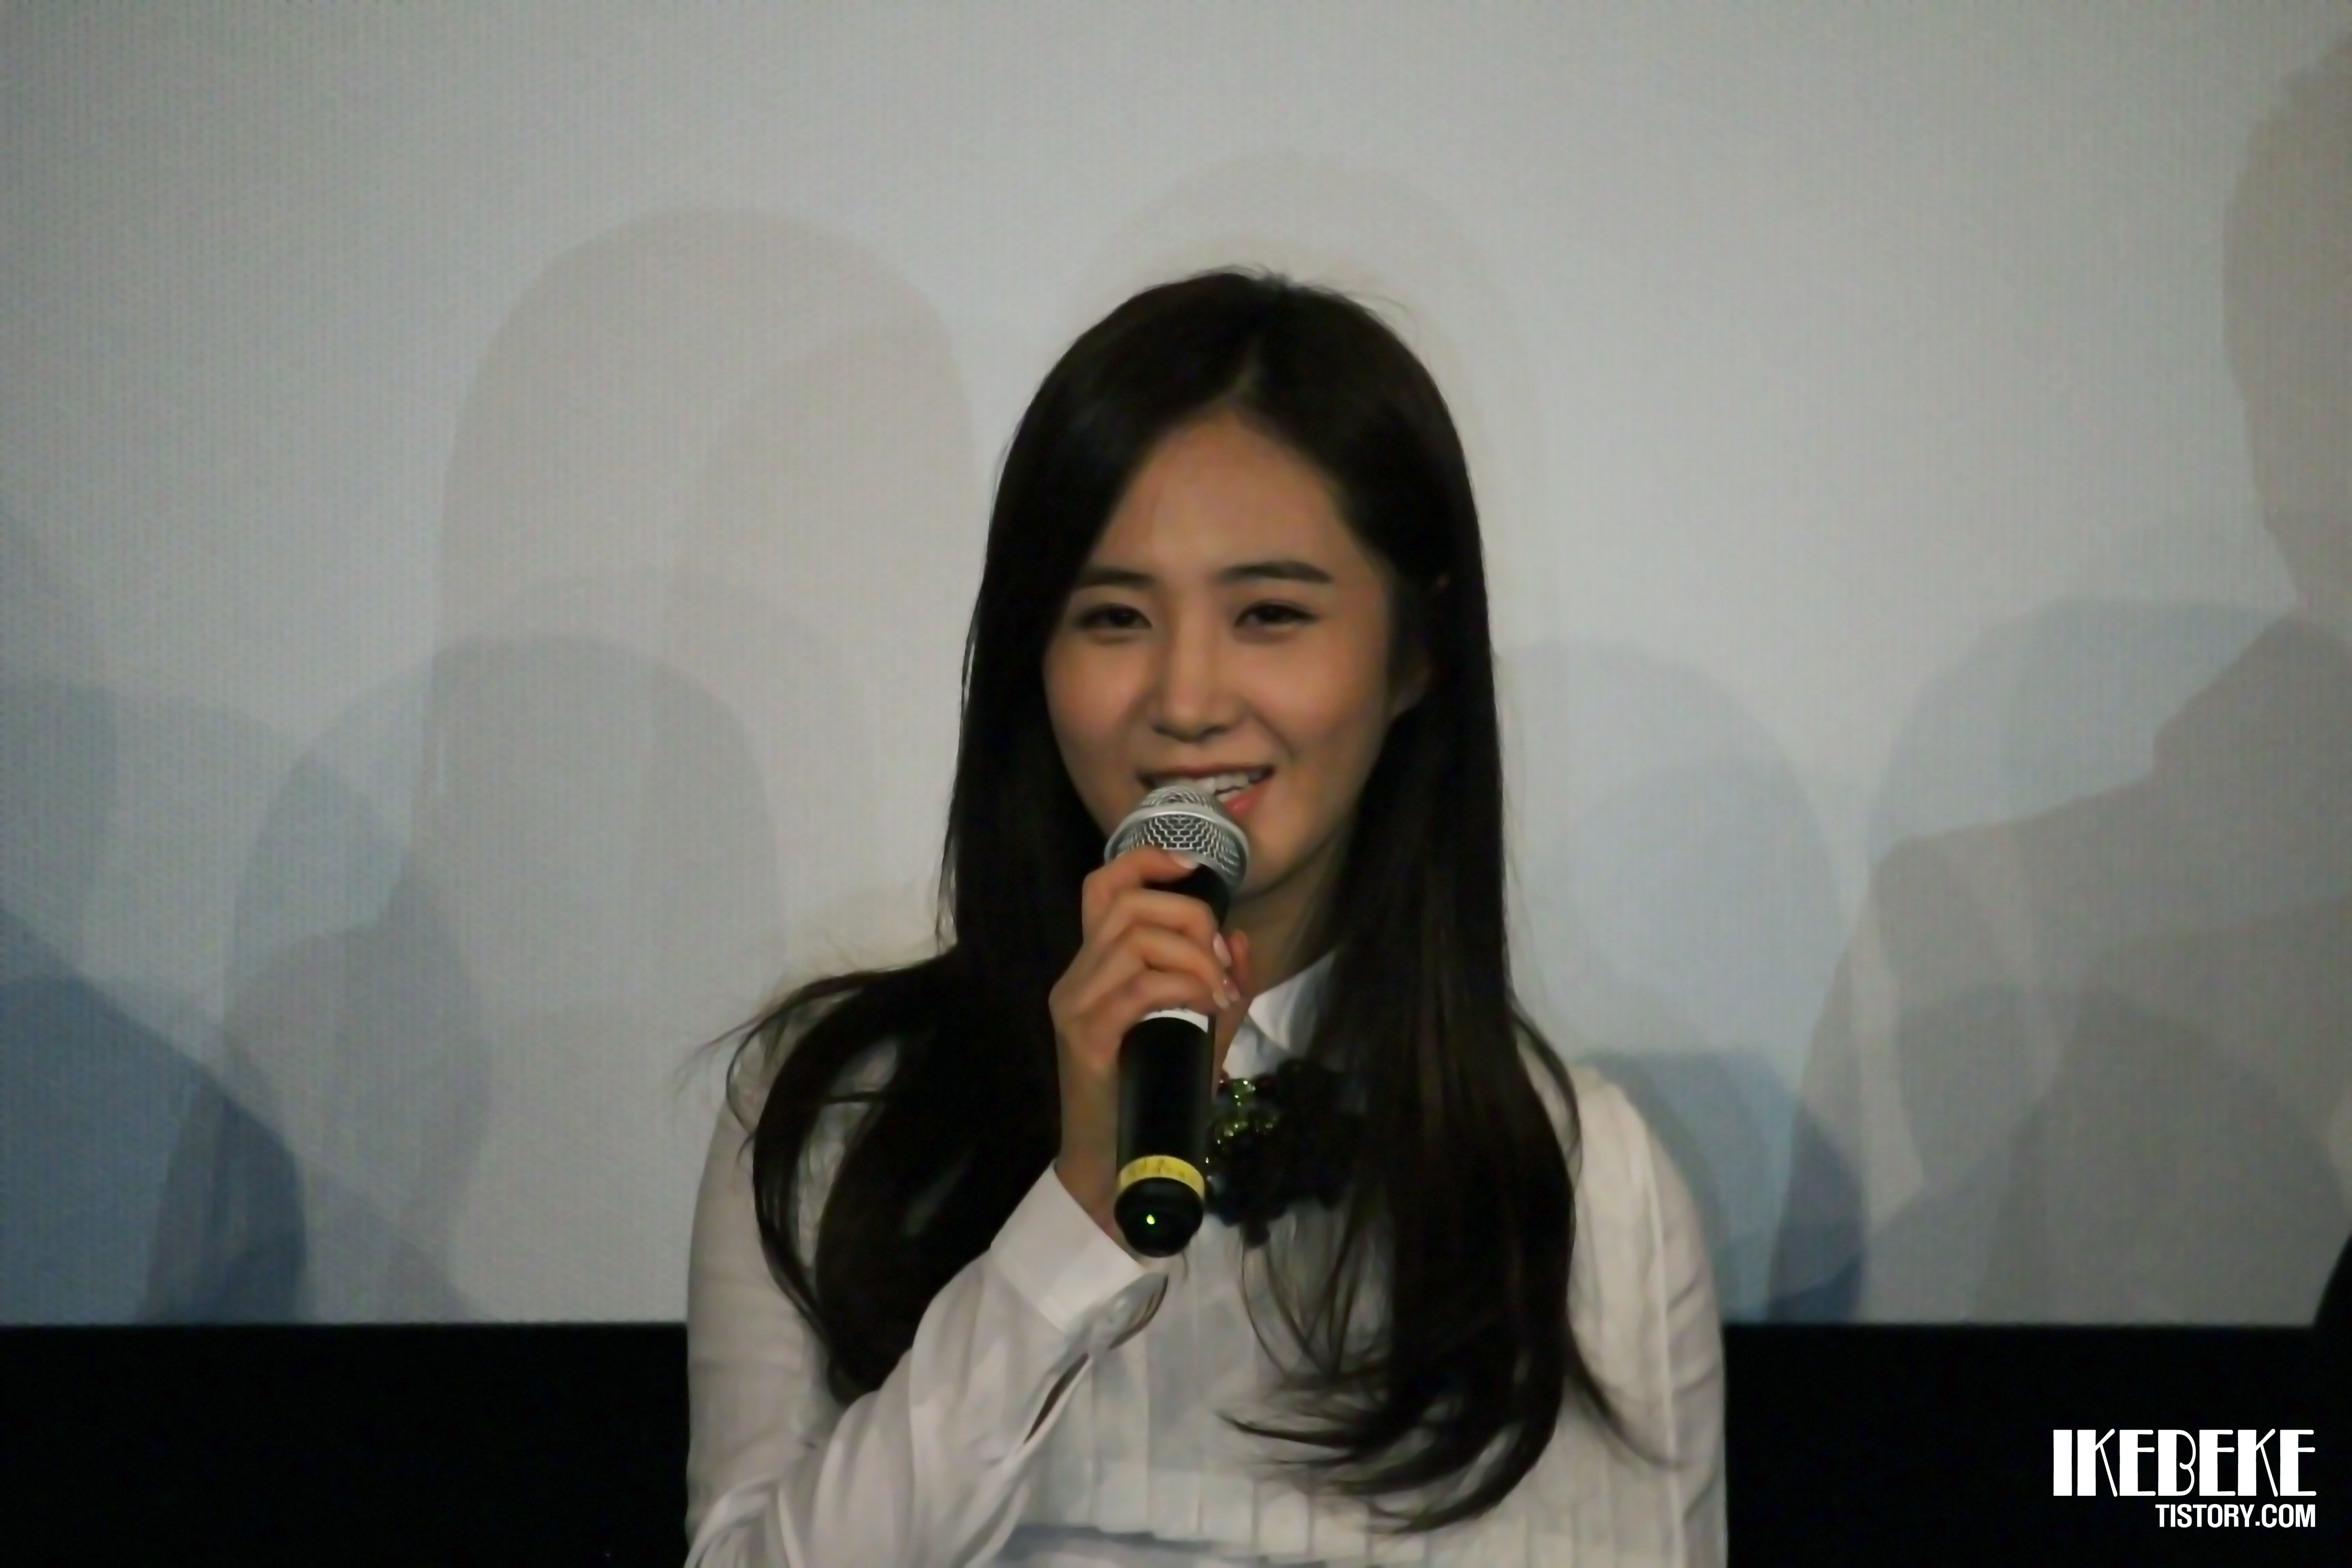 [PIC][07-11-2013]Yuri xuất hiện tại sự kiện "Lotte Cinema" Stage Greeting vào chiều nay + Selca của cô cùng các diễn viên khác 2540393A527D222905E677